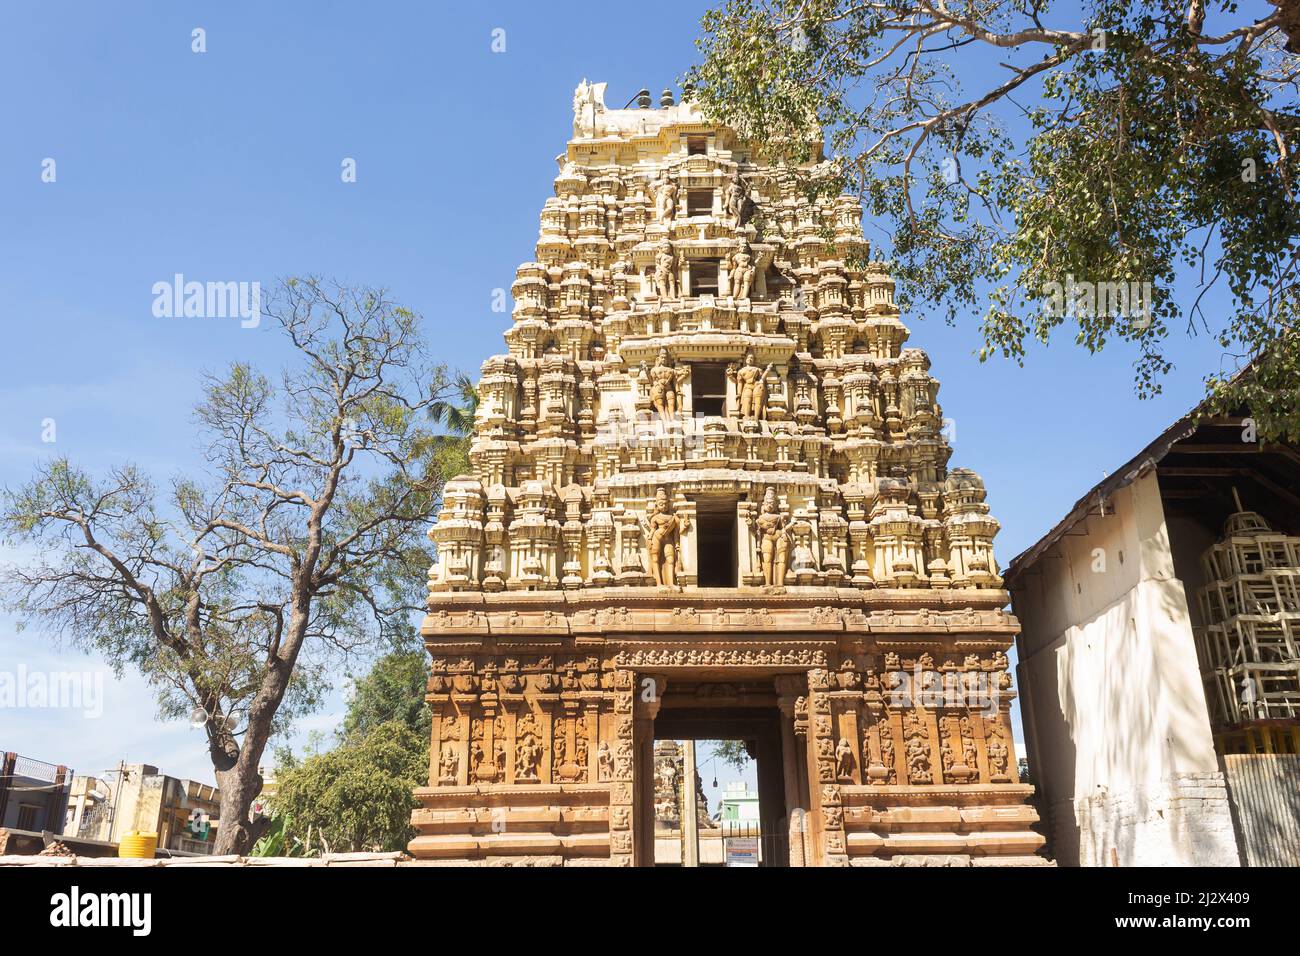 Porte d'entrée principale du temple de Lord Someshwara, c'est une construction de style Dravidien de l'époque Vijayanagara, 14th siècle, Kolar, Karnataka, Inde Banque D'Images